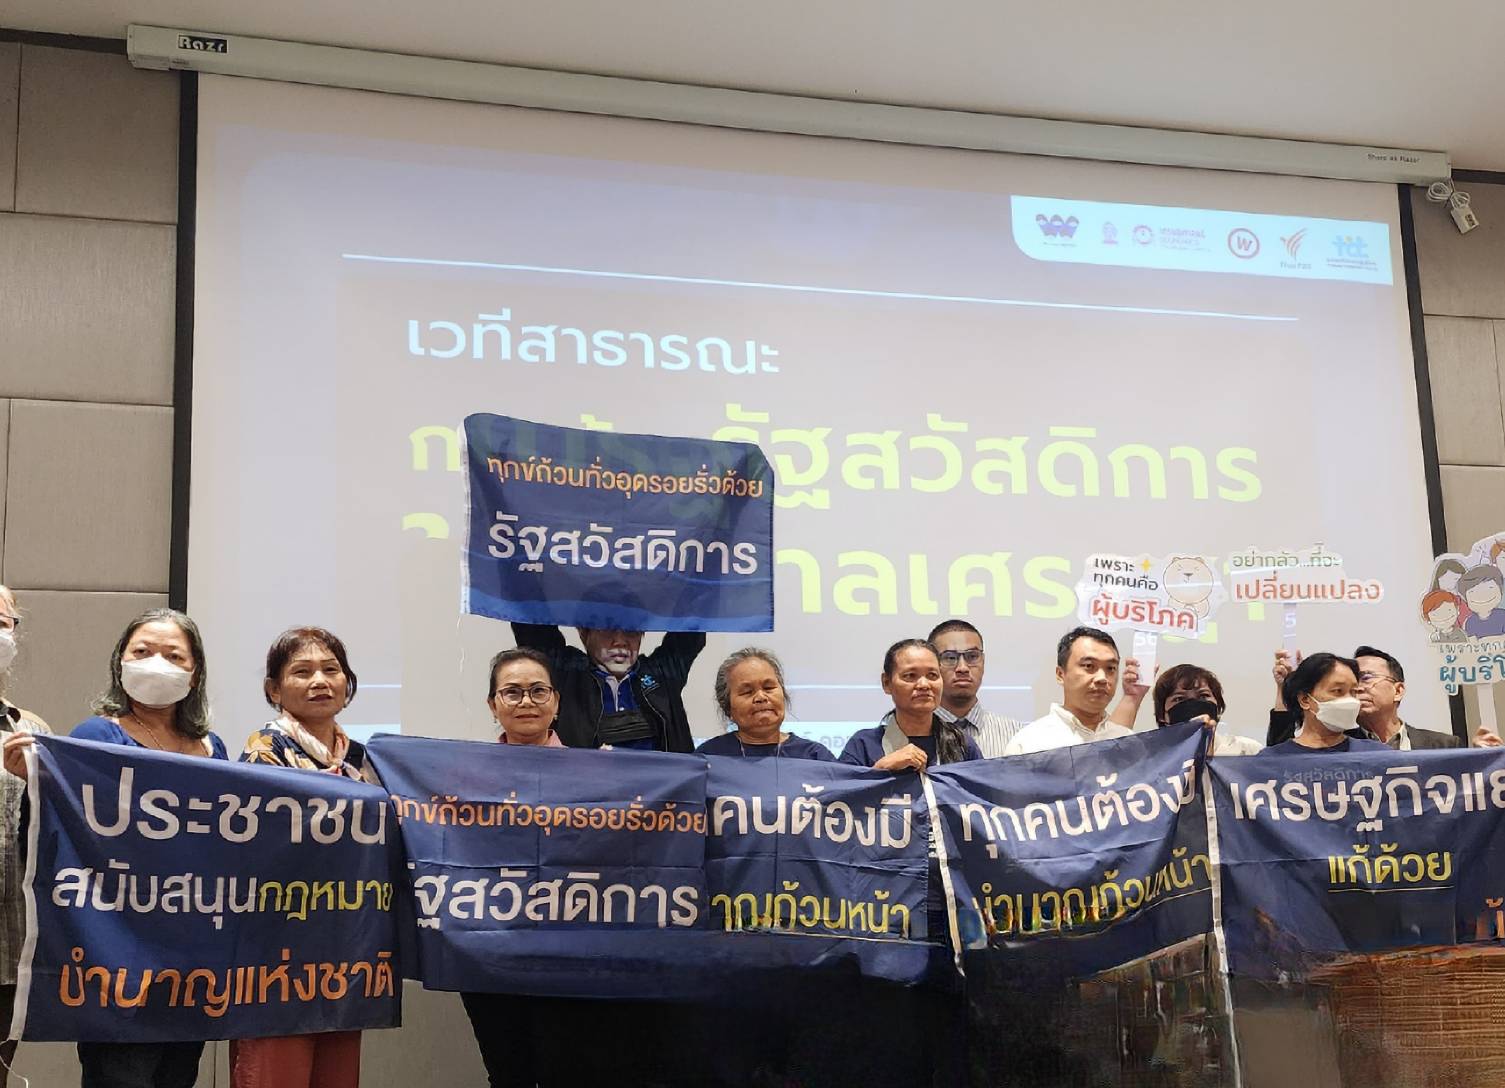 แนะรัฐบาลเศรษฐา ใช้เงินดิจิตอลหมื่นบาท จ่ายสวัสดิการประชาชน | ประชาไท Prachatai.com